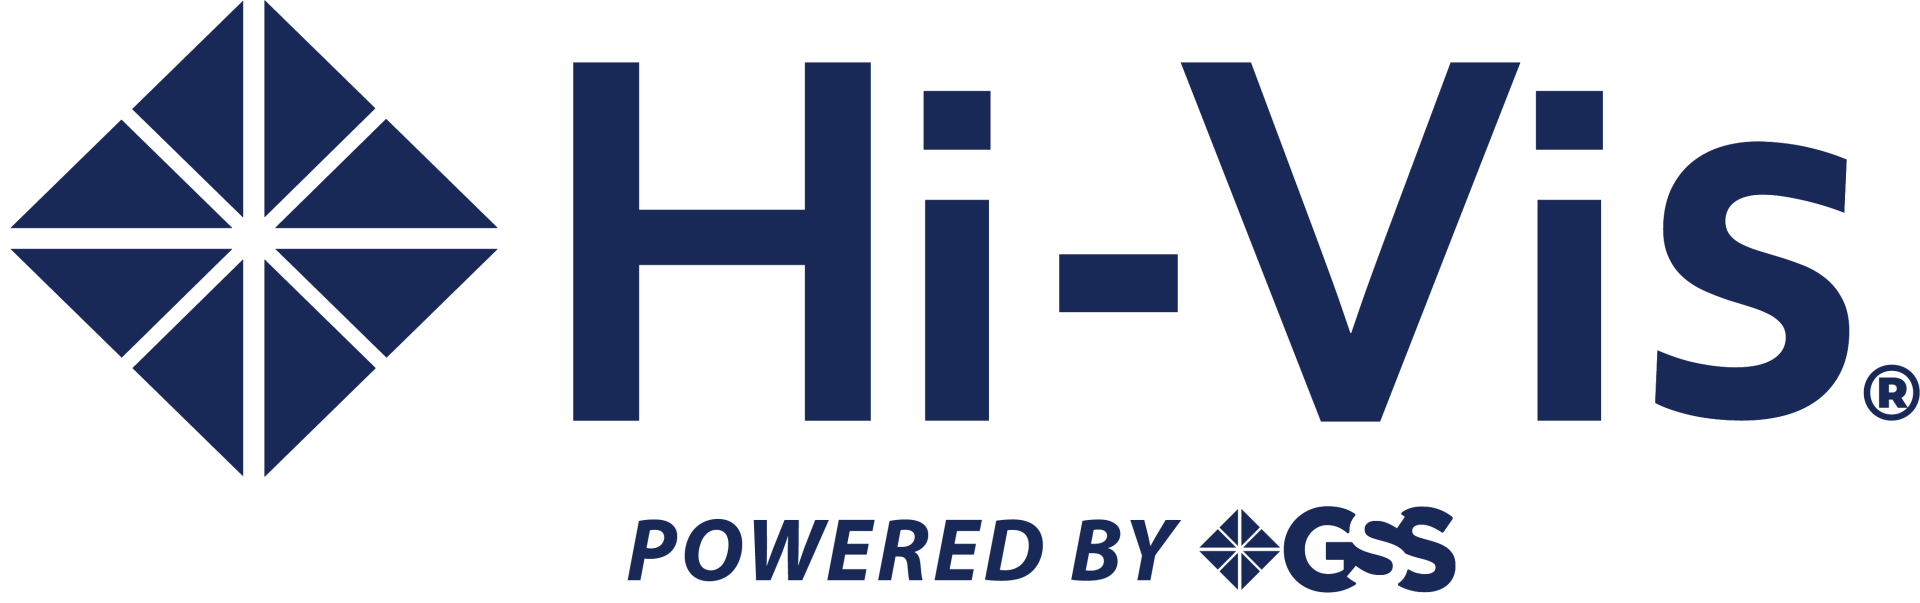 HI-VIS Management Software